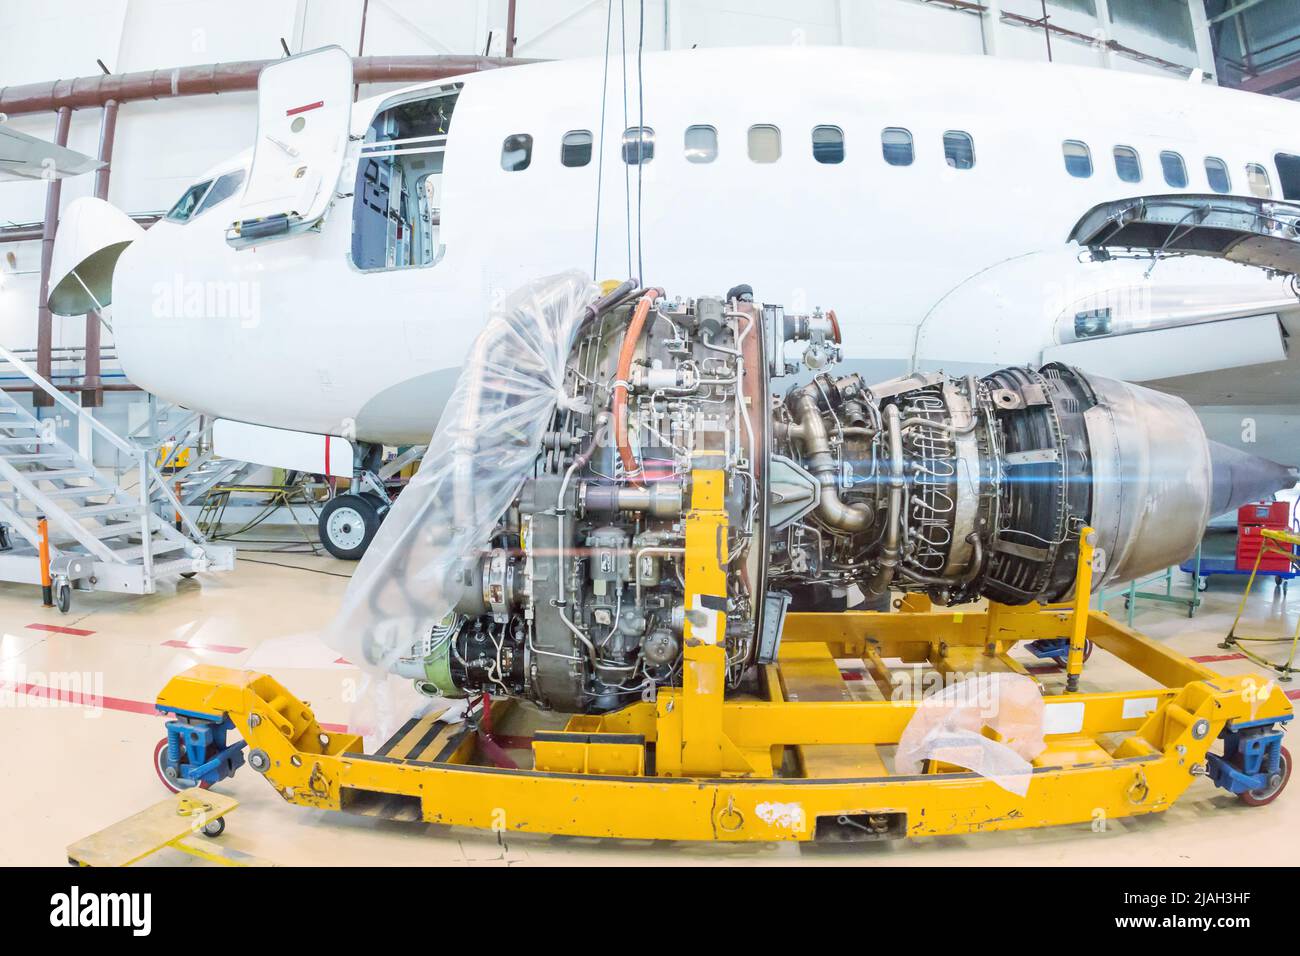 Primer plano del motor de aviones turboventiladores de alta derivación cerca de un avión de pasajeros en un hangar Foto de stock